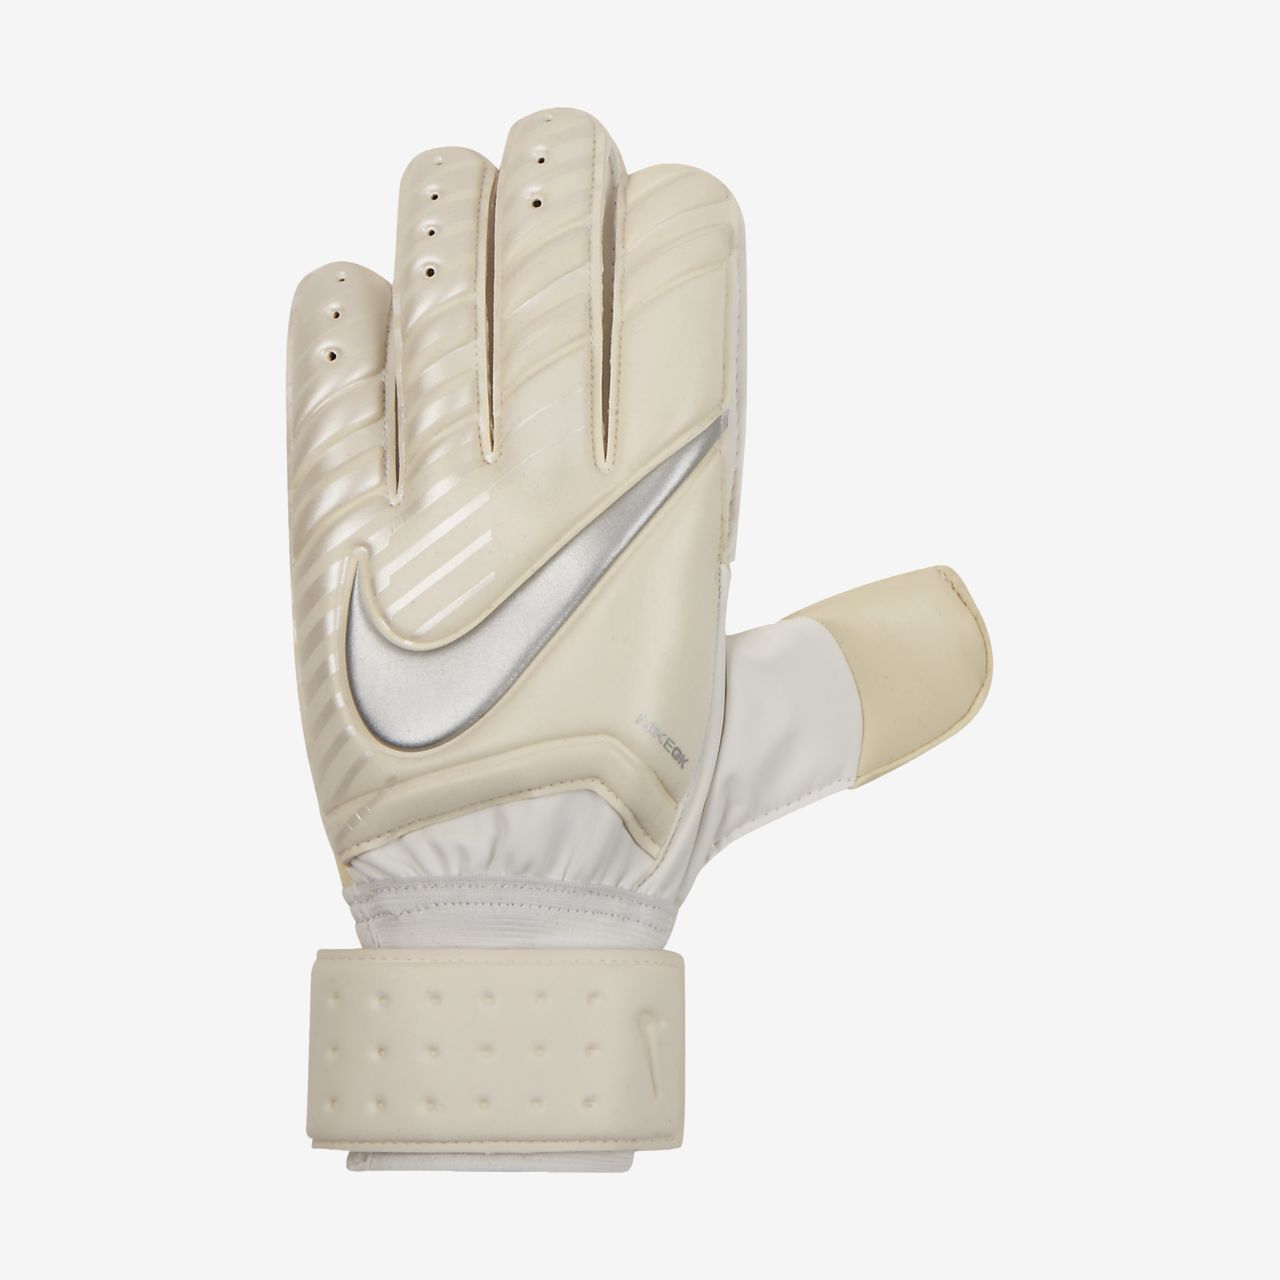 finger spyne goalkeeper gloves